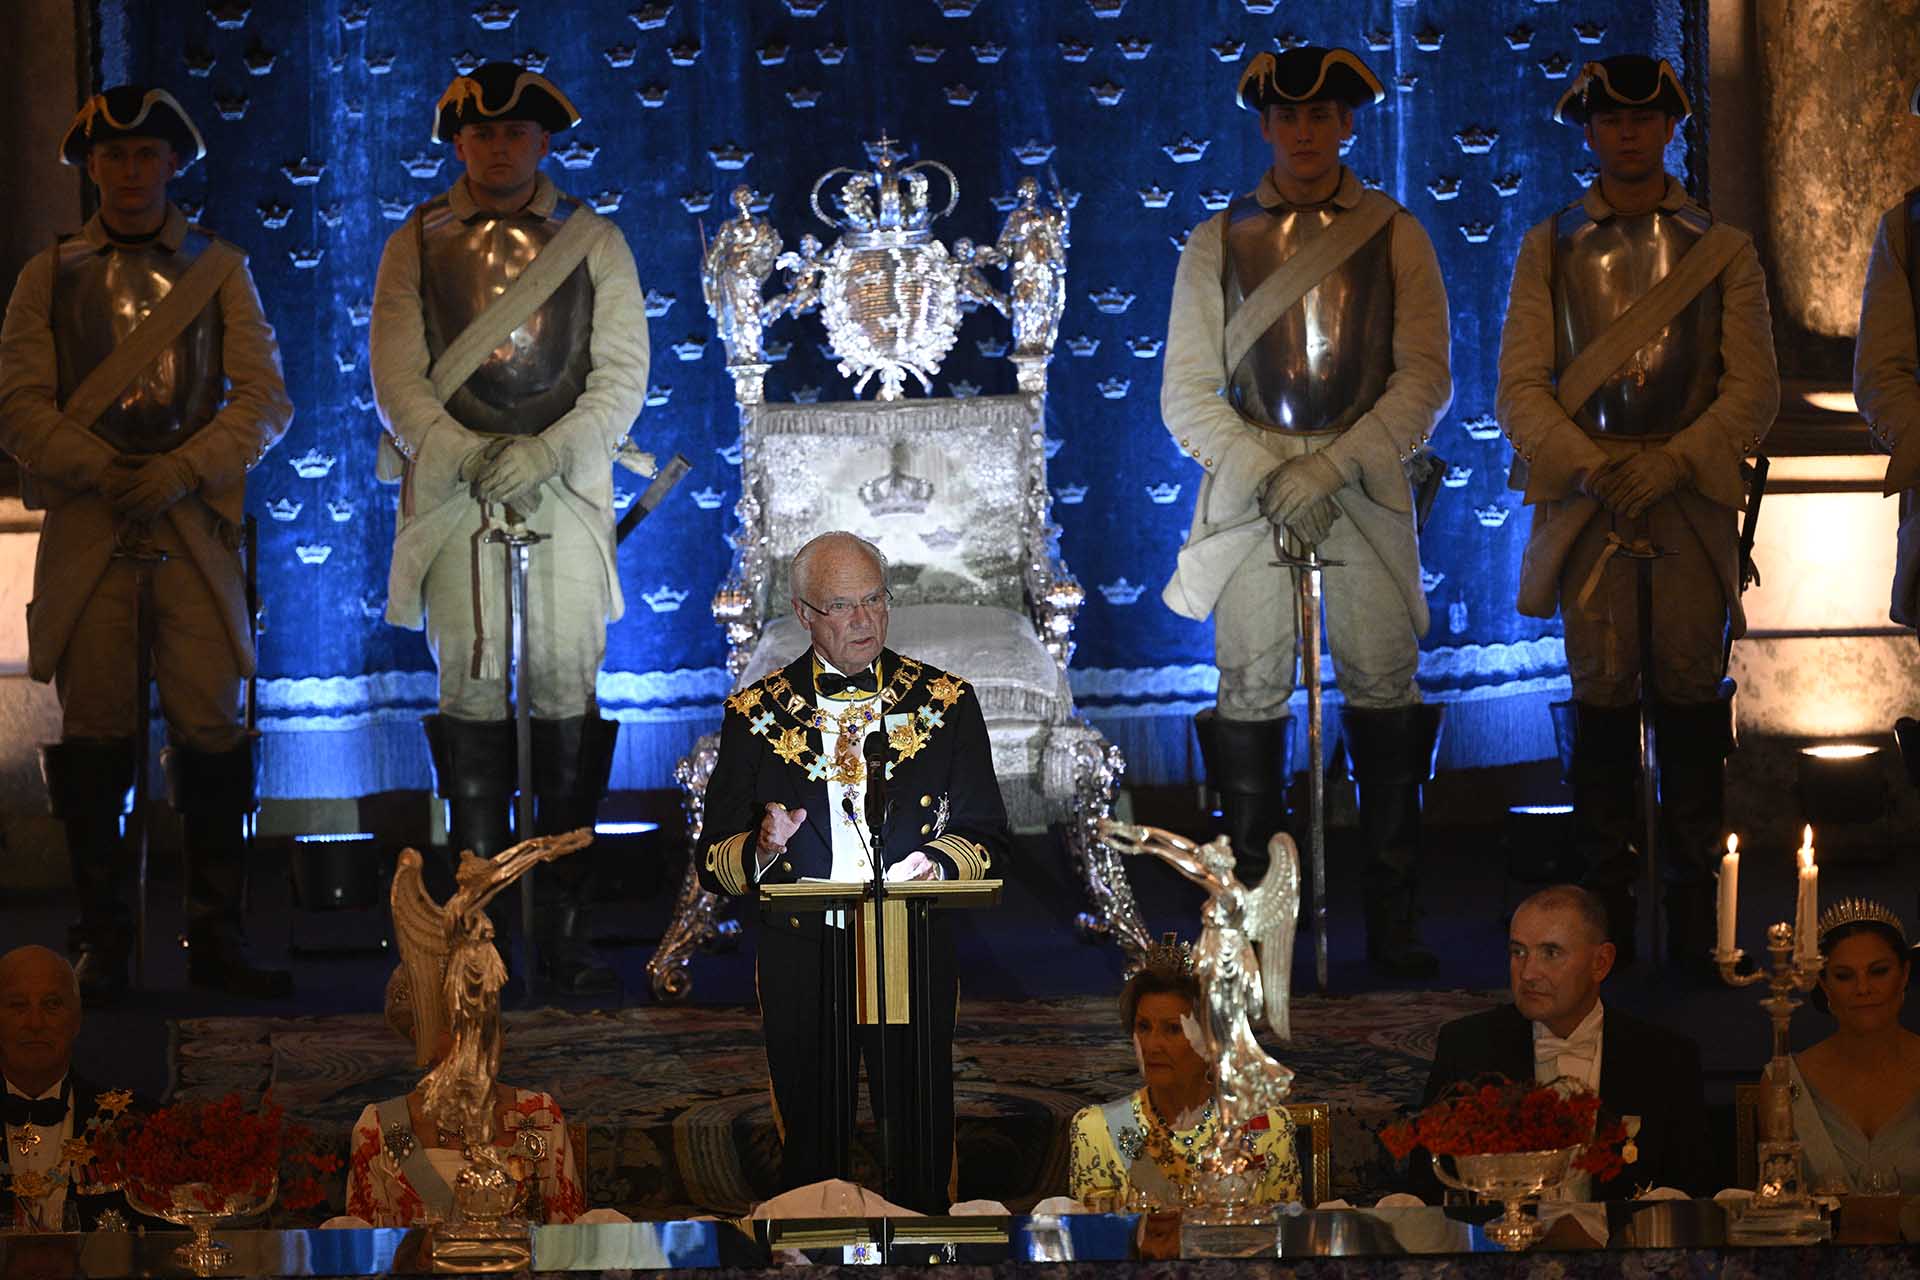 Carlos Gustavo de Suecia ofrece un discurso de bienvenida